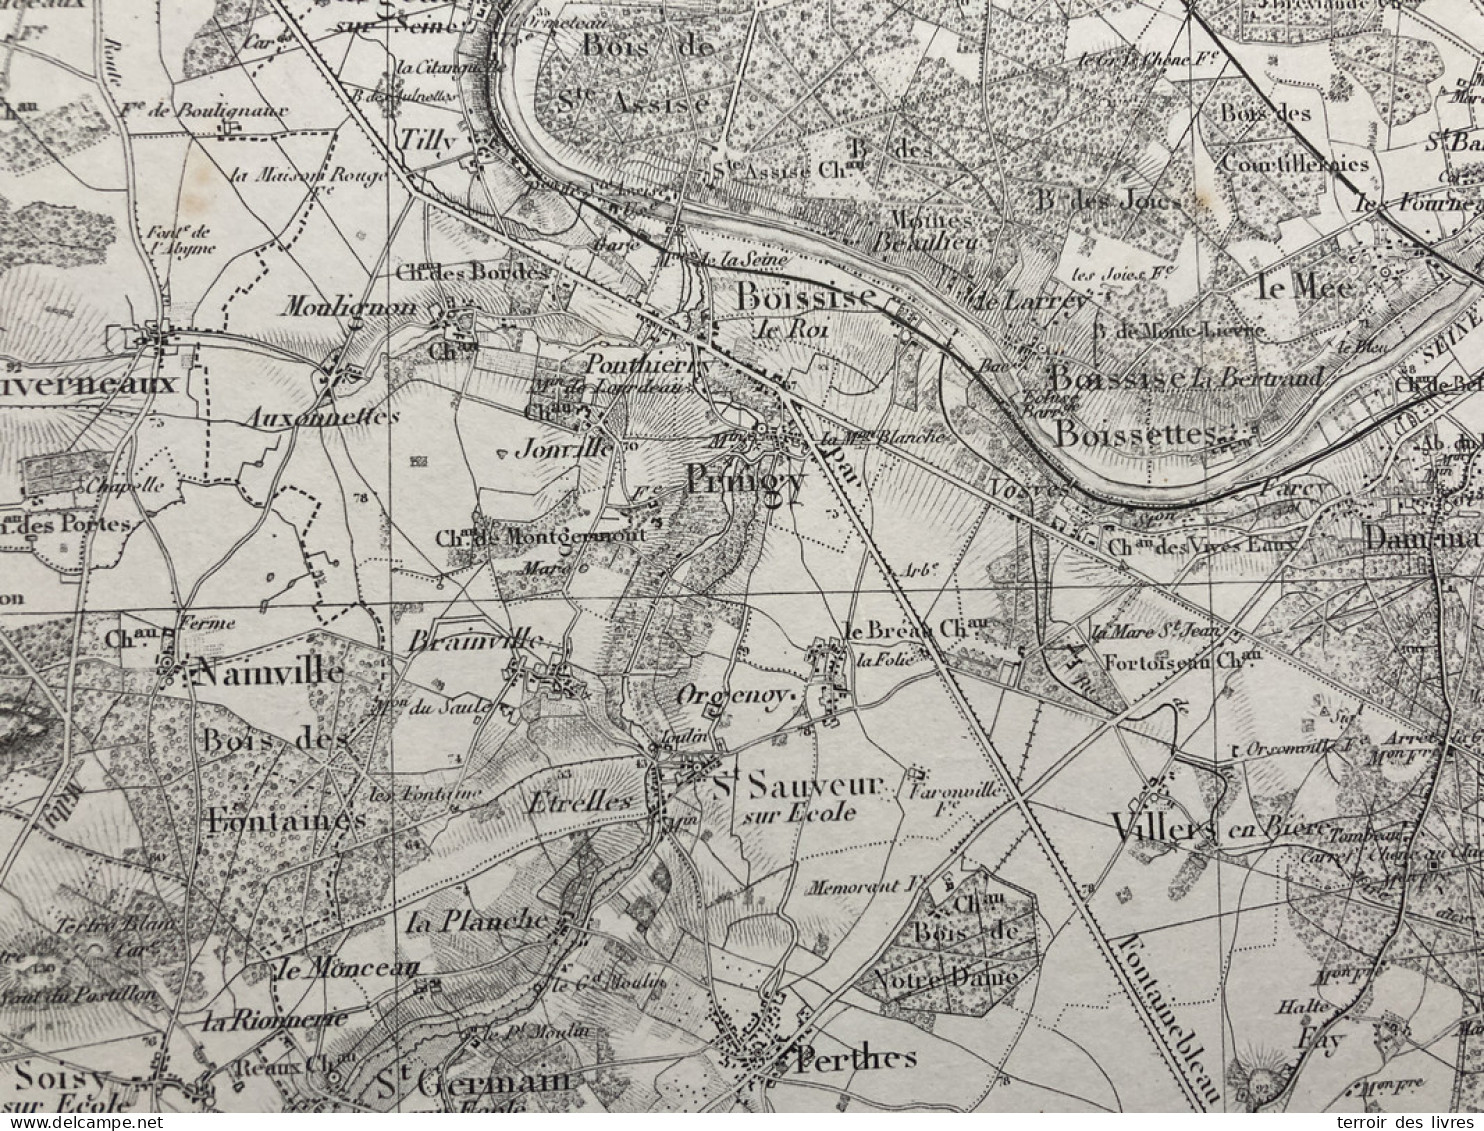 Carte état Major MELUN S.E. 1888 35x54cm PRINGY BOISSISE-LE-ROI PONTHIERRY BOISSISE-LA-BERTRAND BOISSETTES ST-SAUVEUR-SU - Geographical Maps